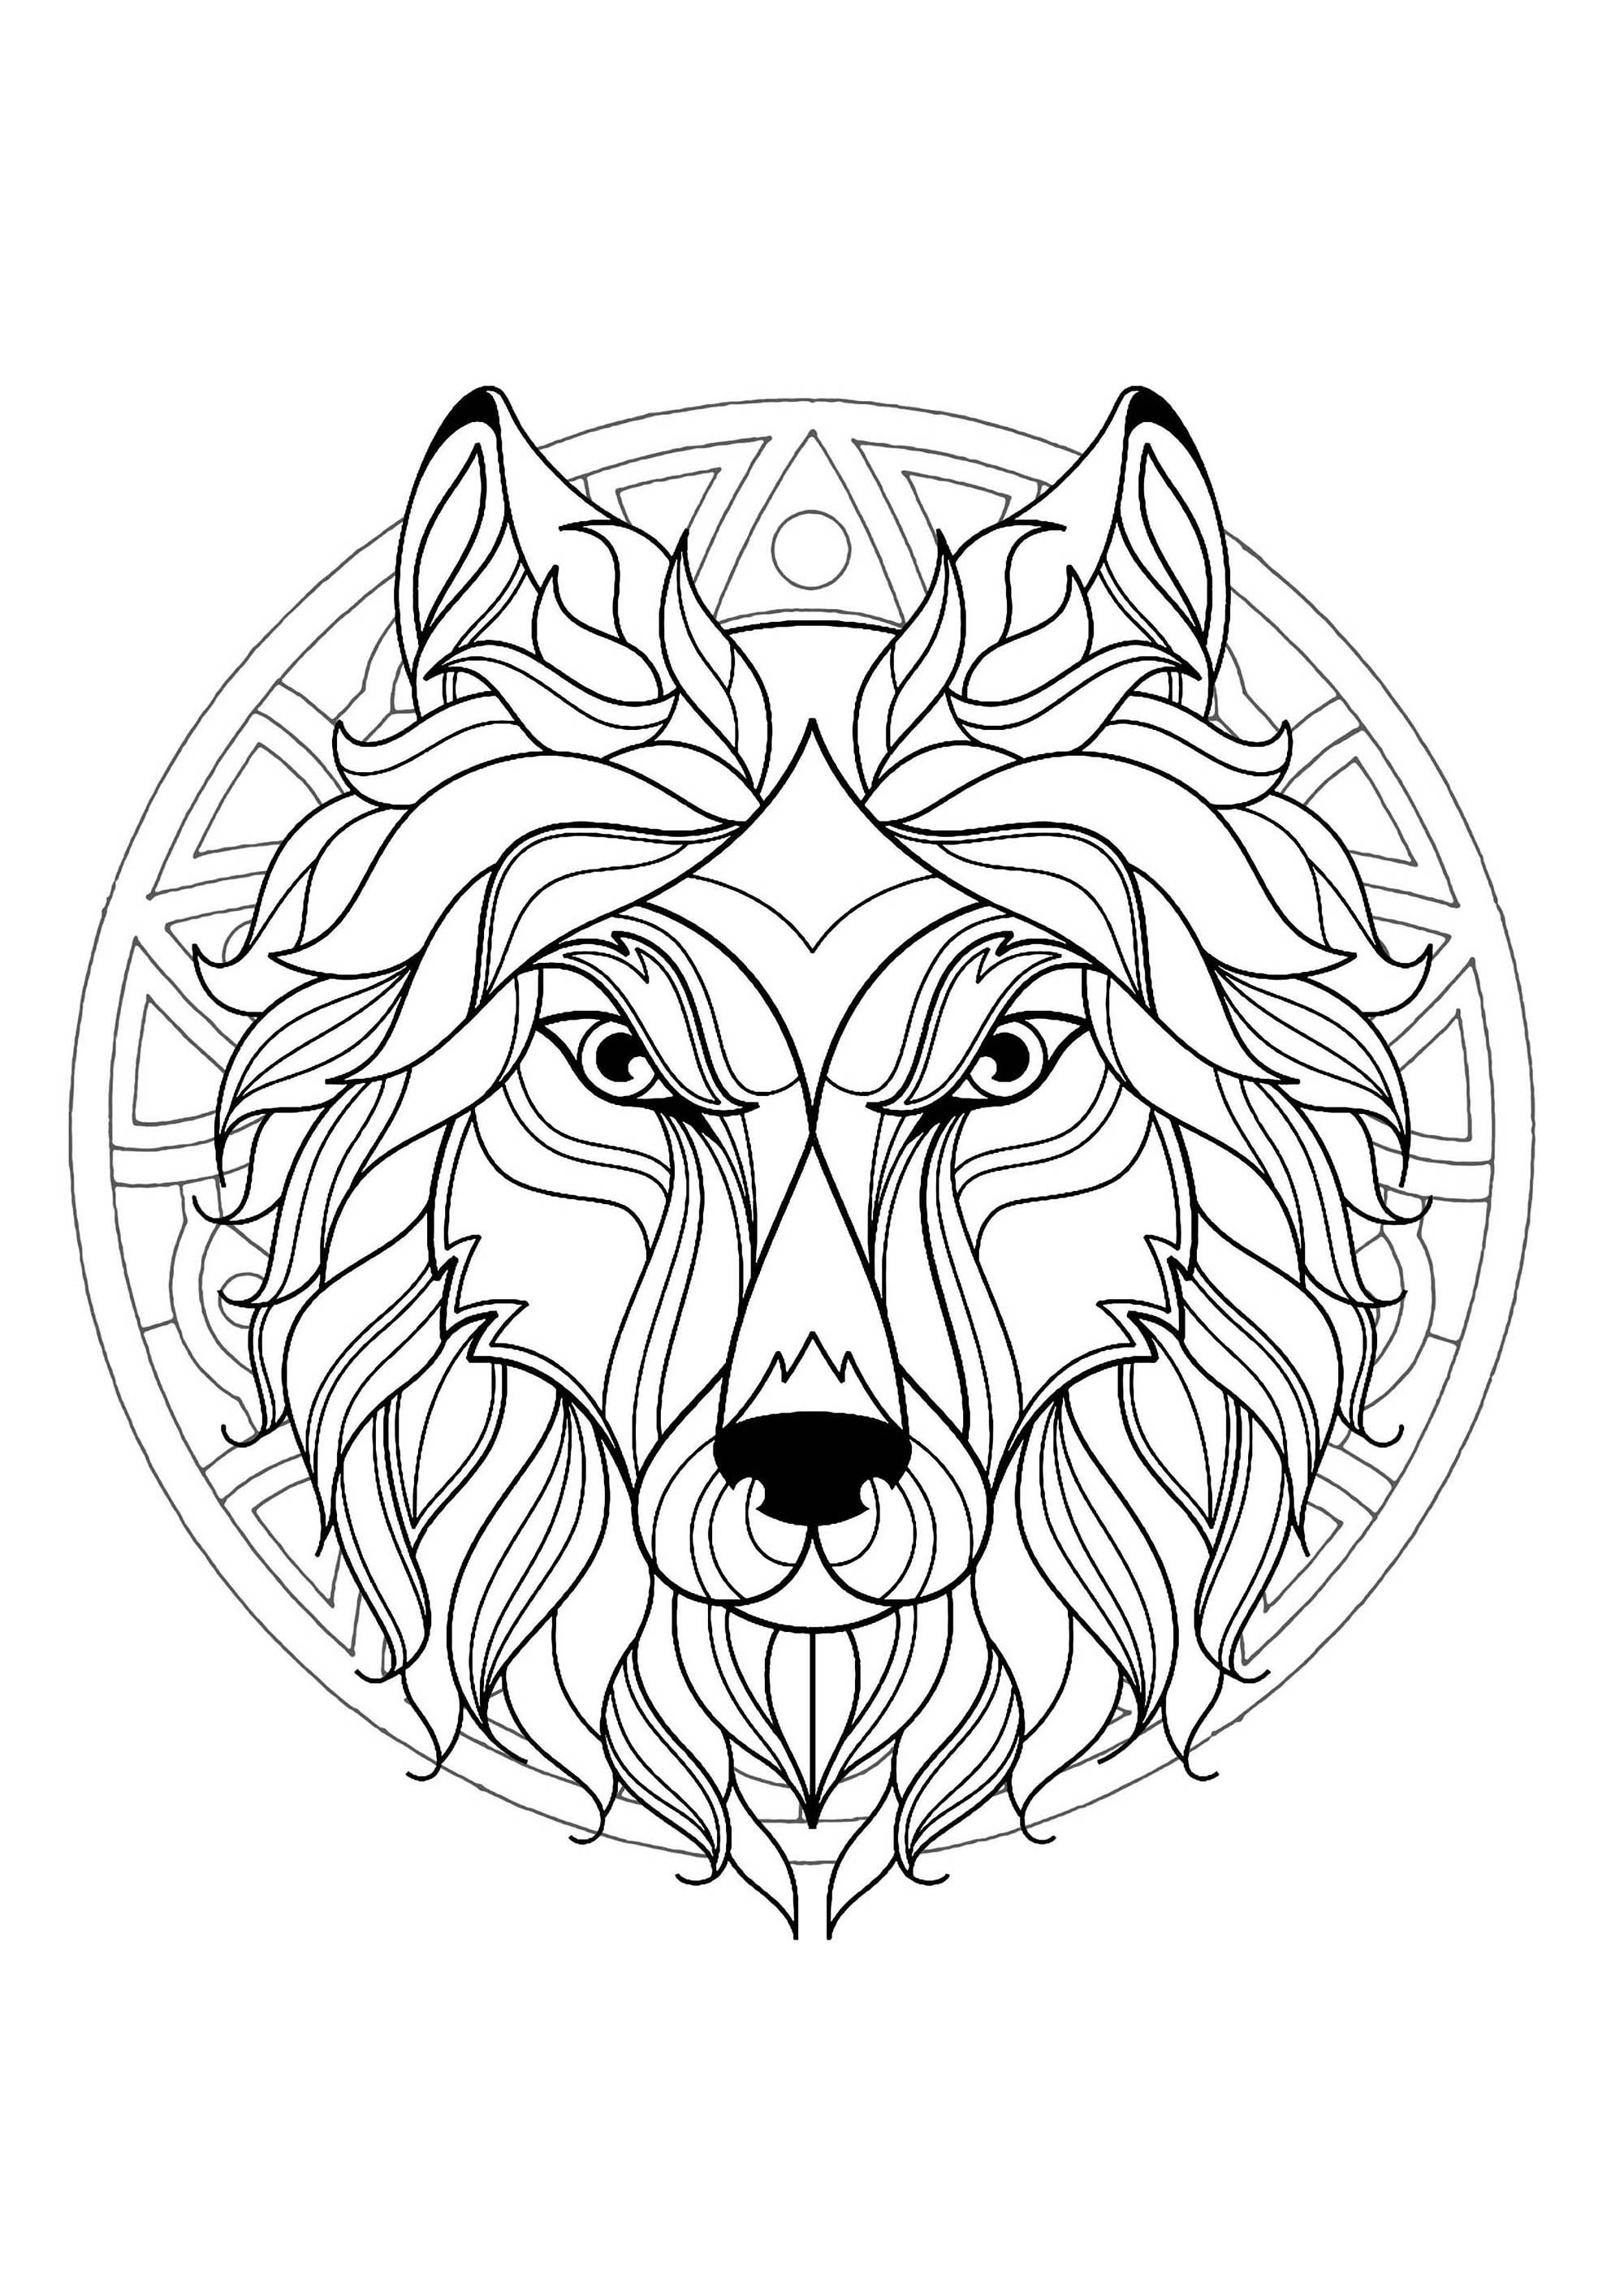 Mandala da colorare con la bellissima testa di lupo e motivi geometrici sullo sfondo